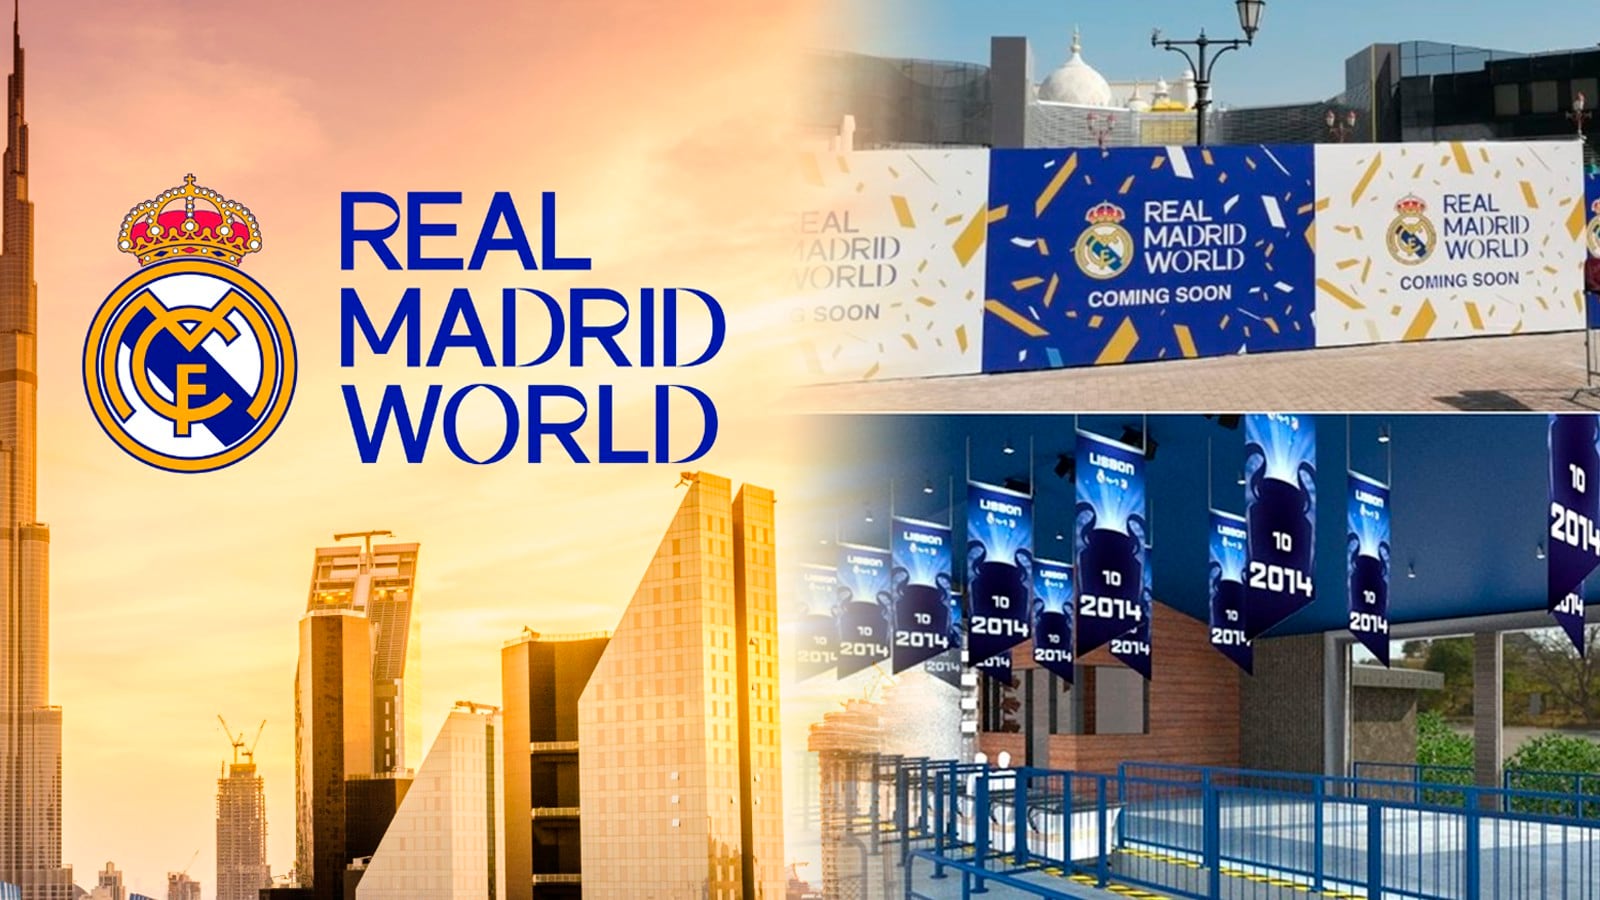 Parque temático ‘Real Madrid World’. (Foto: Marca)